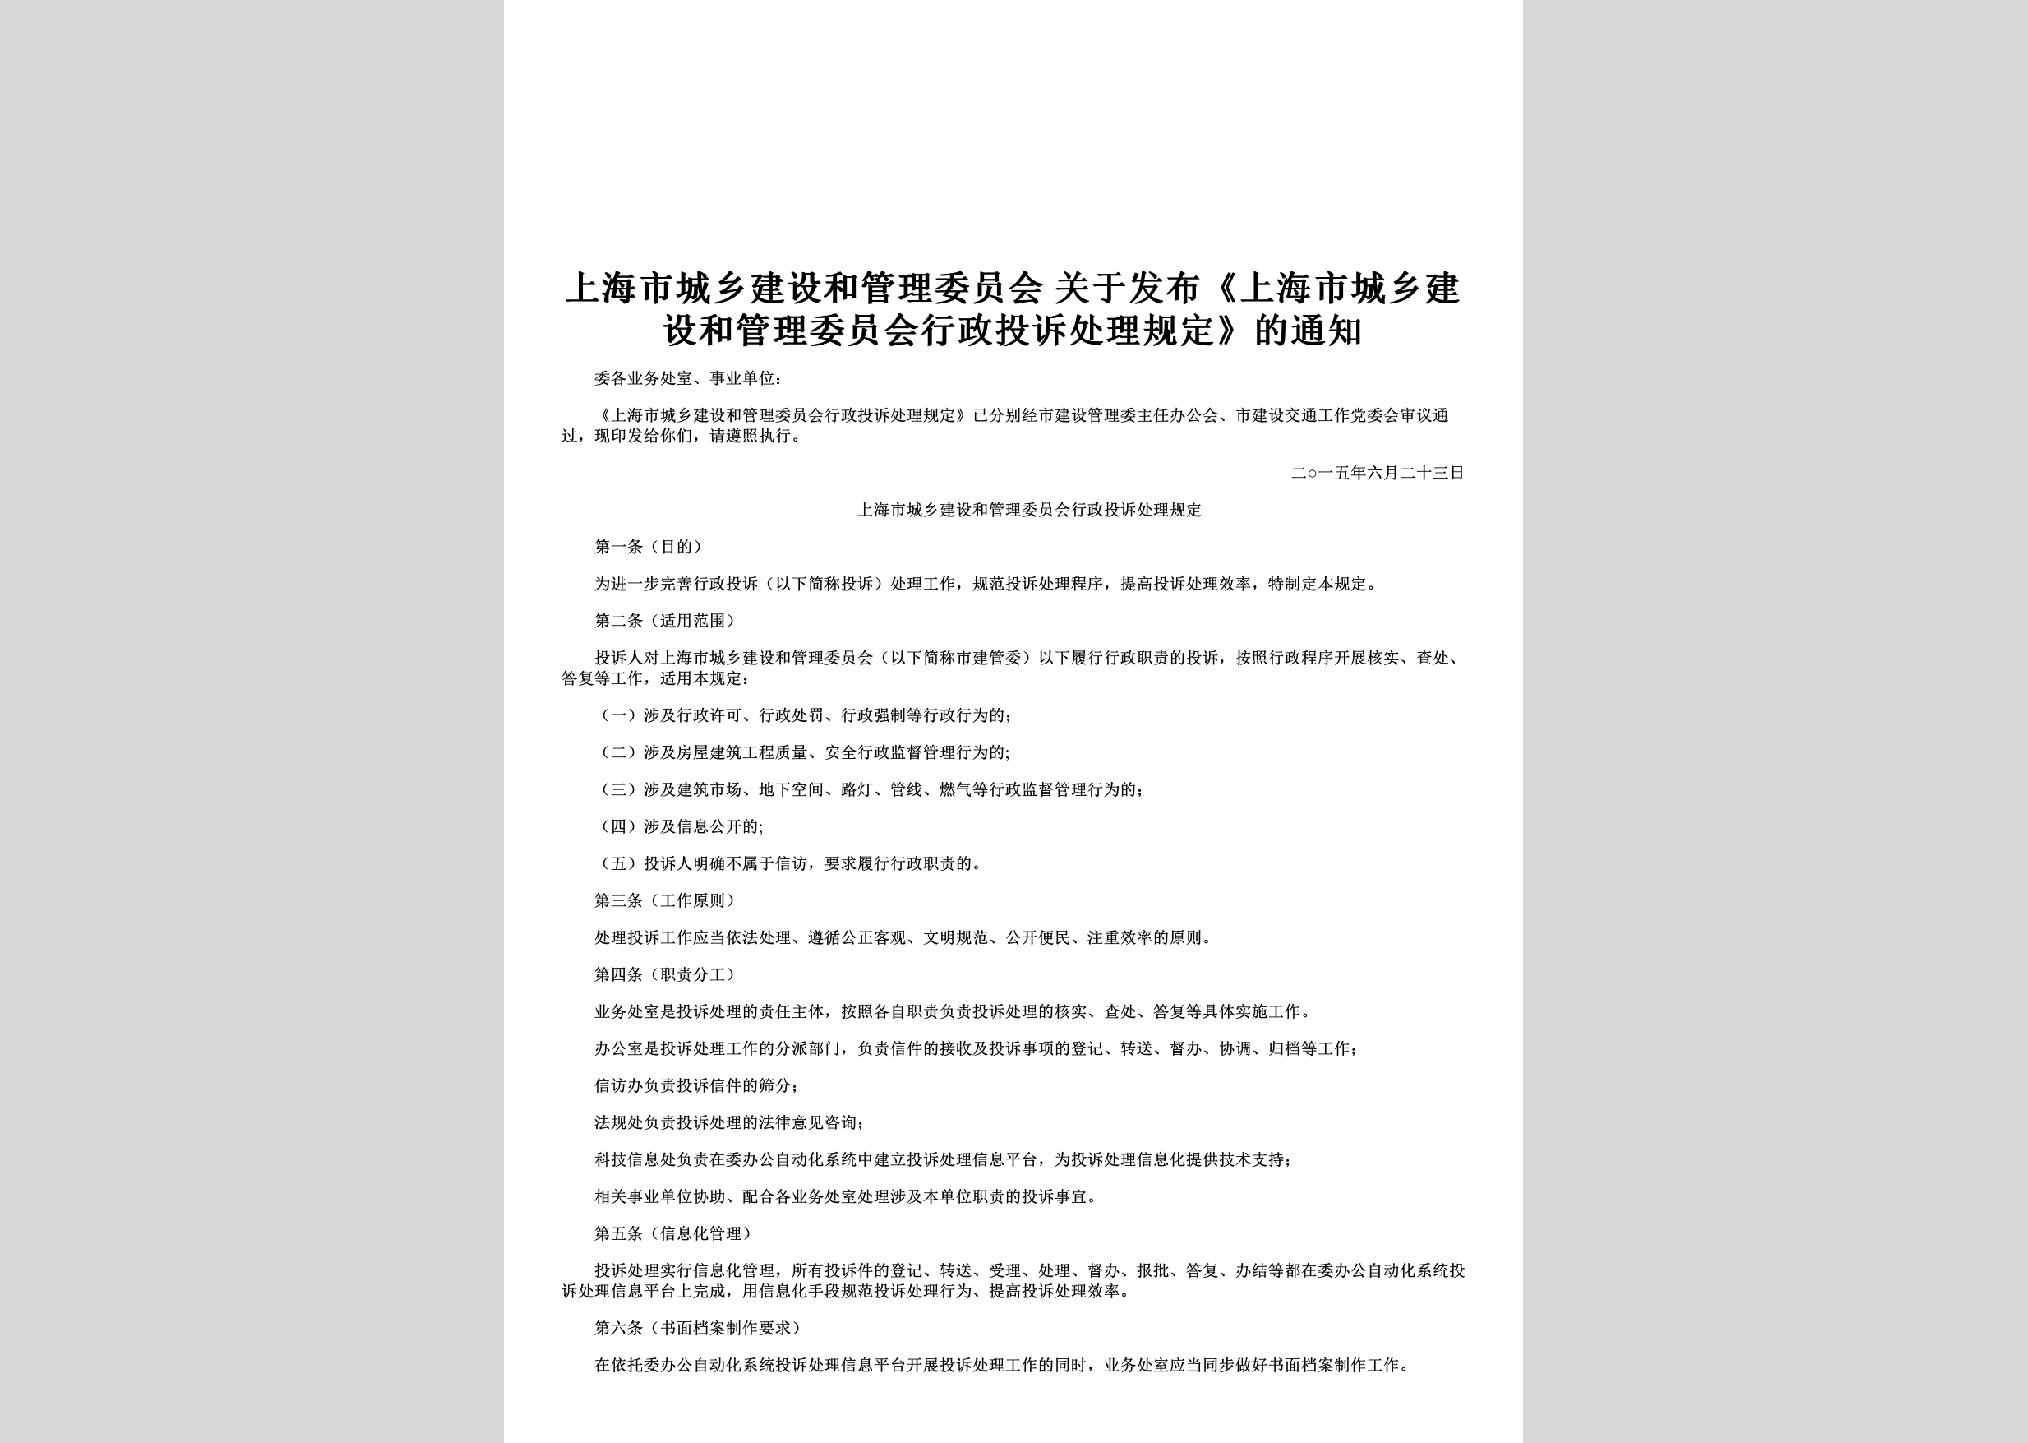 沪建管[2015]429号：关于发布《上海市城乡建设和管理委员会行政投诉处理规定》的通知